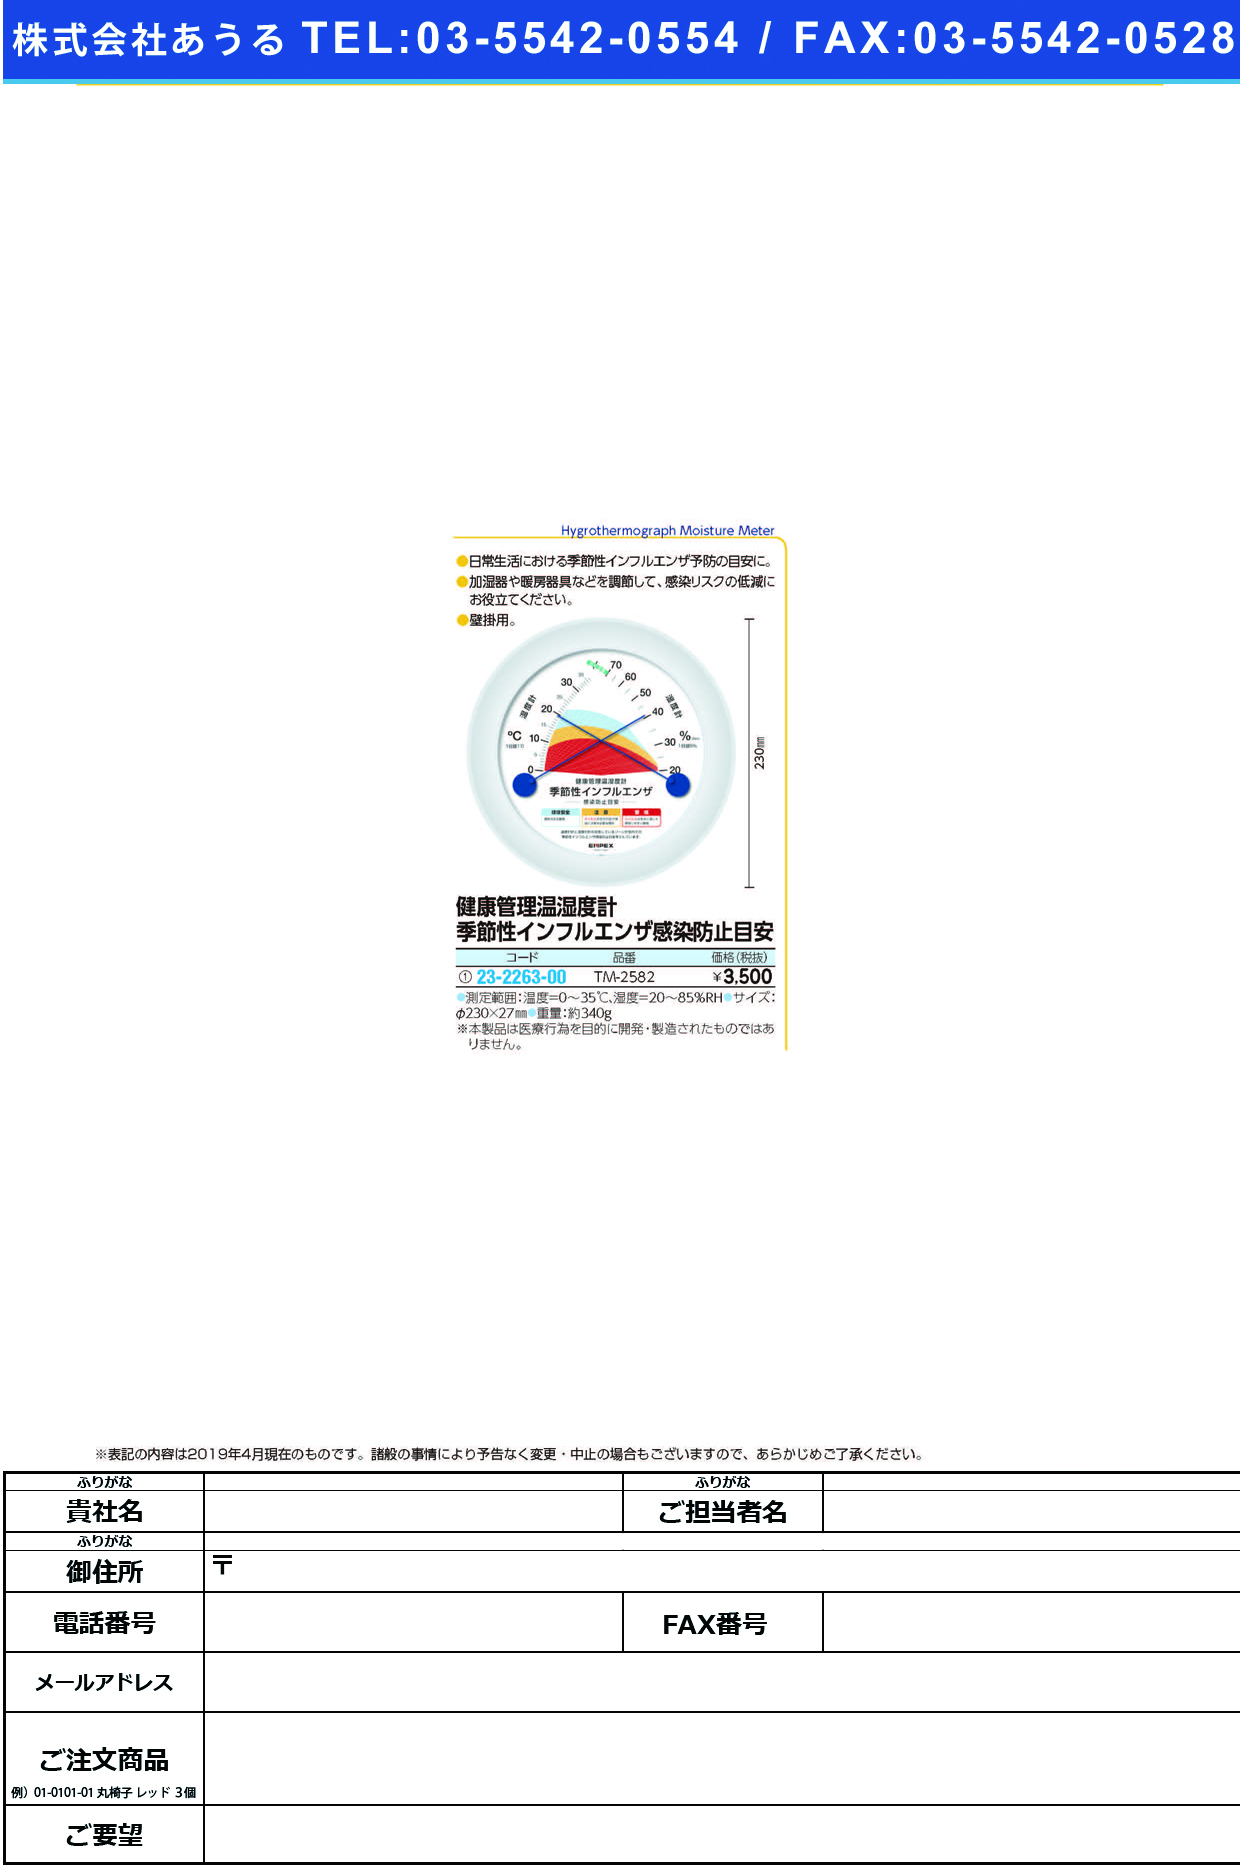 (23-2263-00)健康管理温湿度計（インフルエンザ） TM-2582 ｹﾝｺｳｶﾝﾘｵﾝｼﾂﾄﾞｹｲ(ｷｾﾂｾ【1個単位】【2019年カタログ商品】